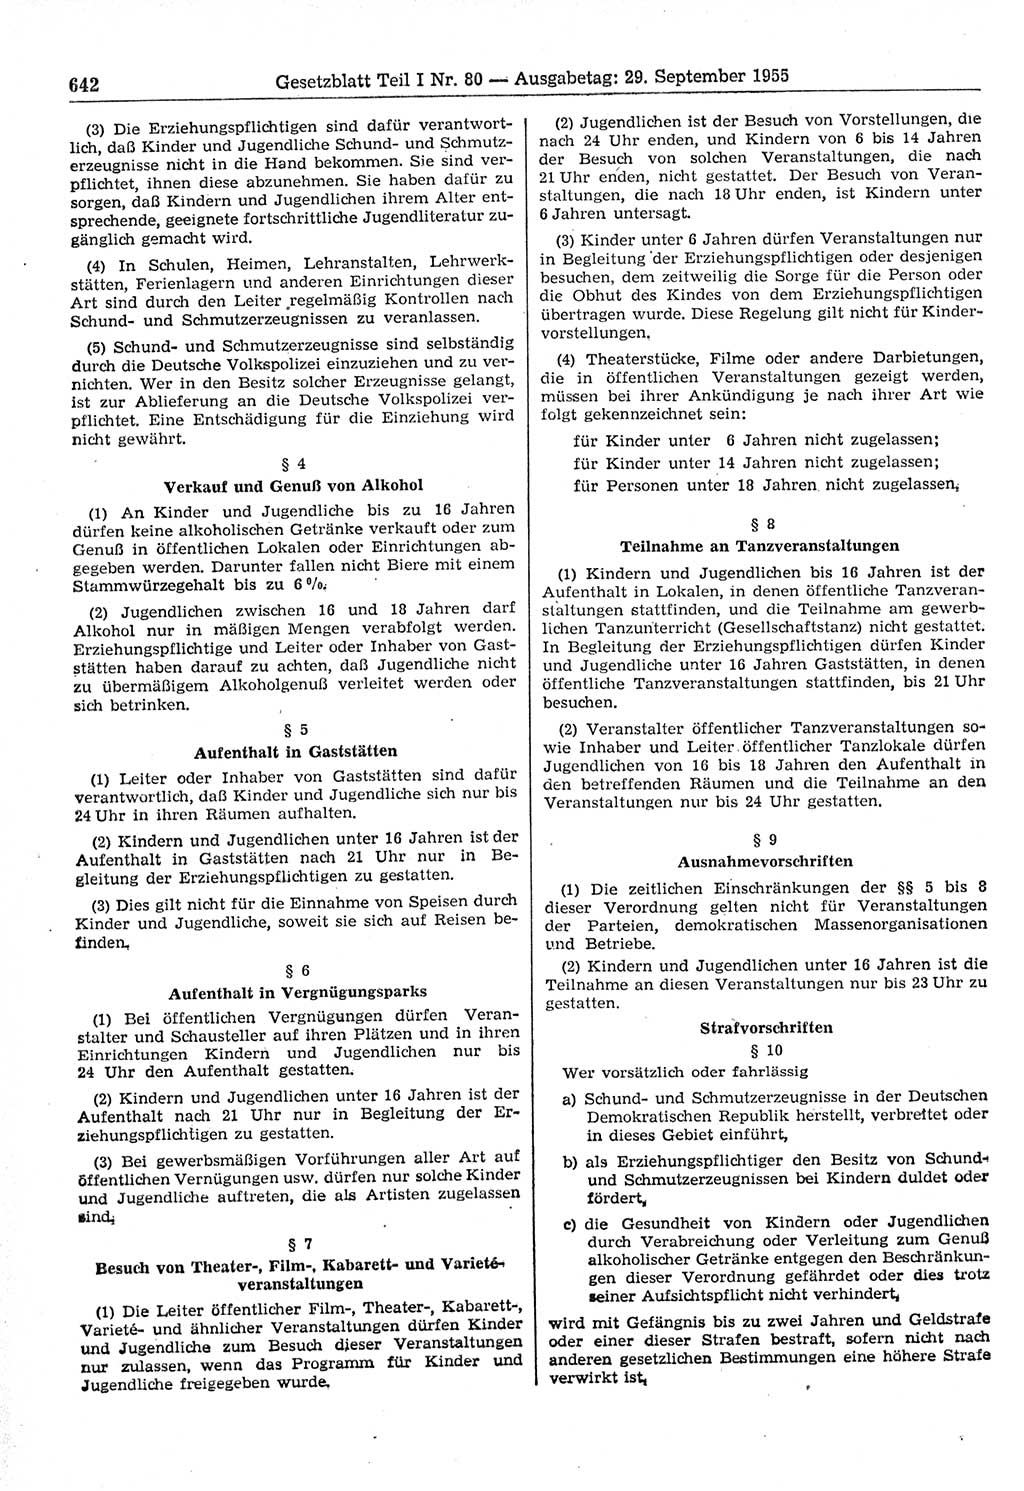 Gesetzblatt (GBl.) der Deutschen Demokratischen Republik (DDR) Teil Ⅰ 1955, Seite 642 (GBl. DDR Ⅰ 1955, S. 642)